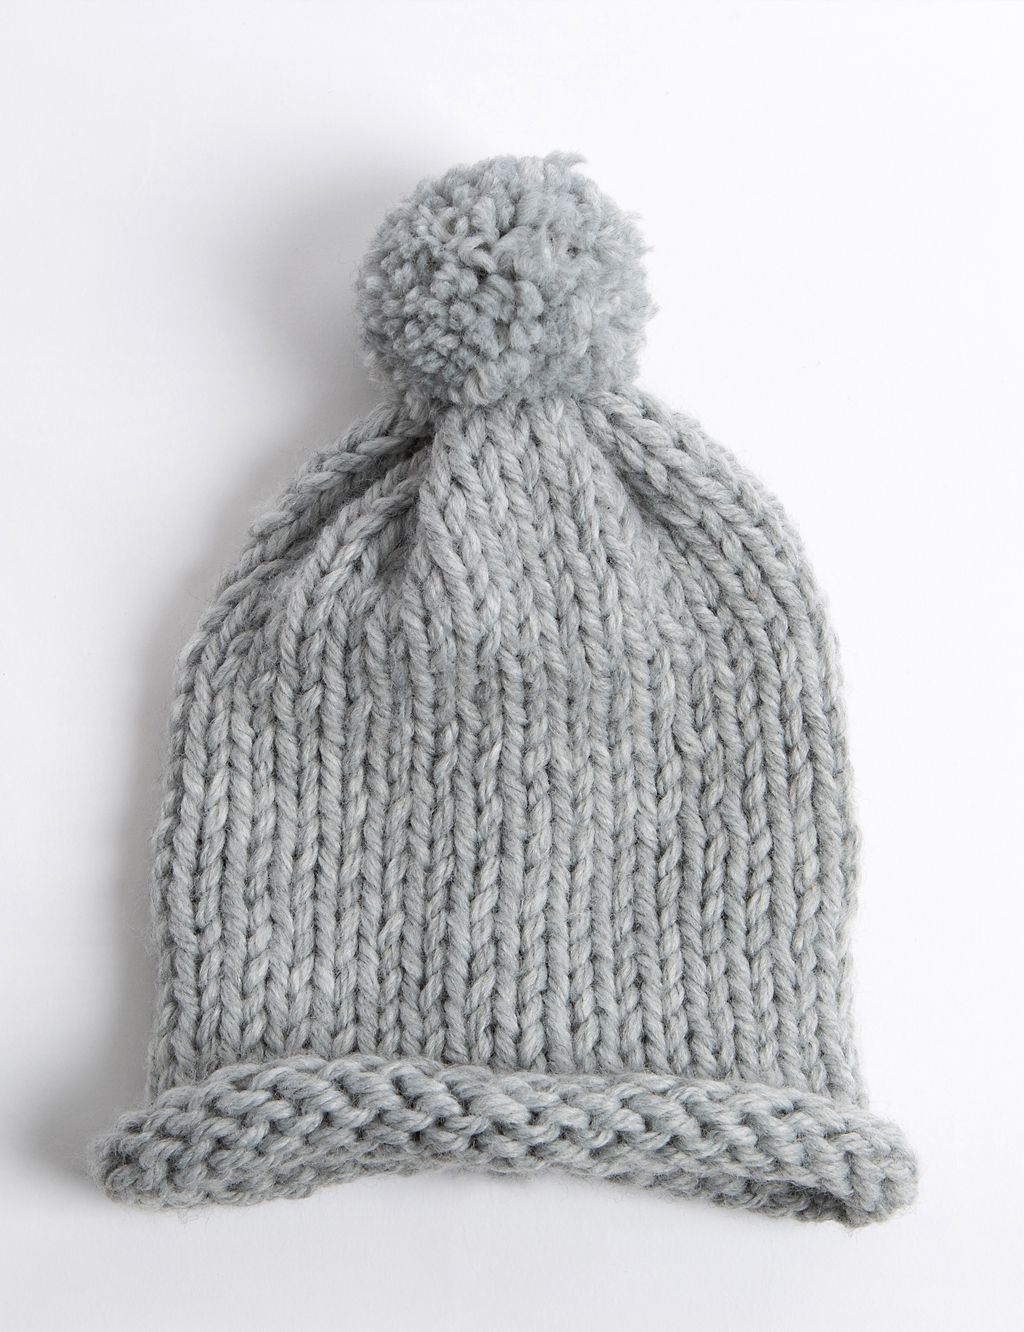 Pom Pom Hat Knitting Kit 1 of 4